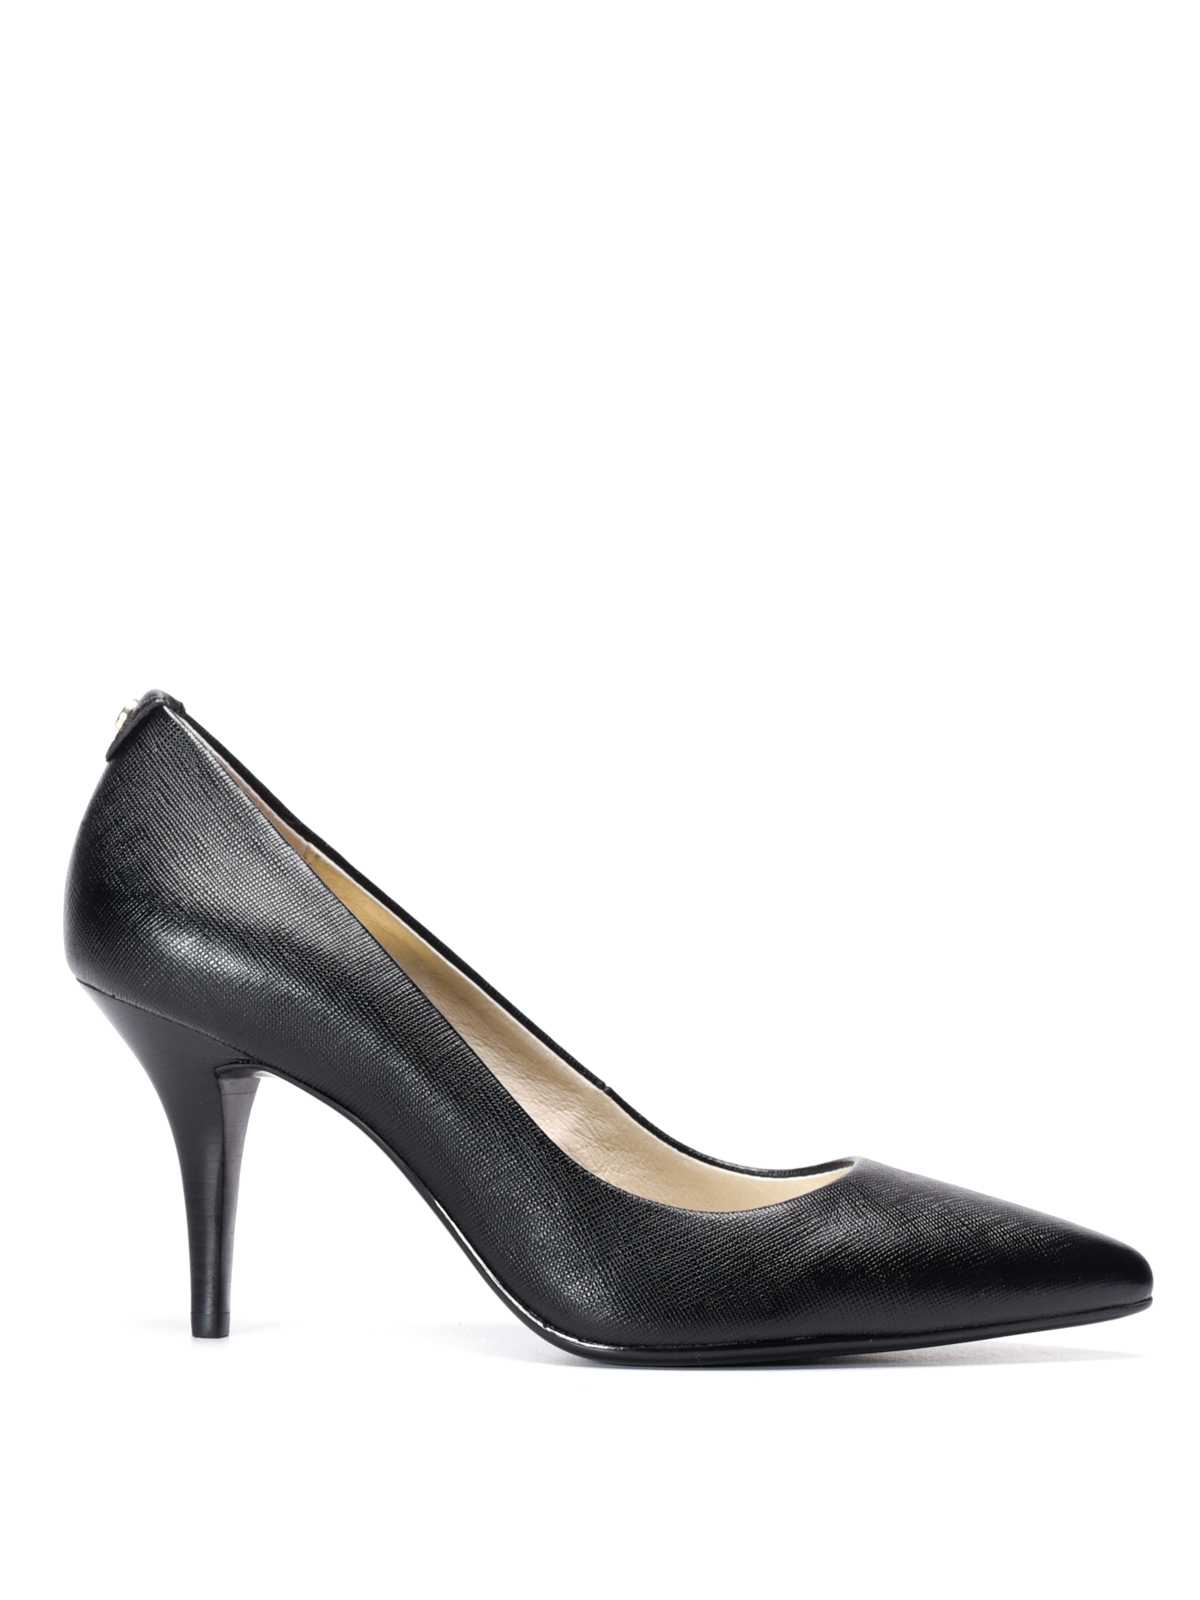 Court shoes Michael Kors - Flex leather mid pumps - 40T2MFMP2L001